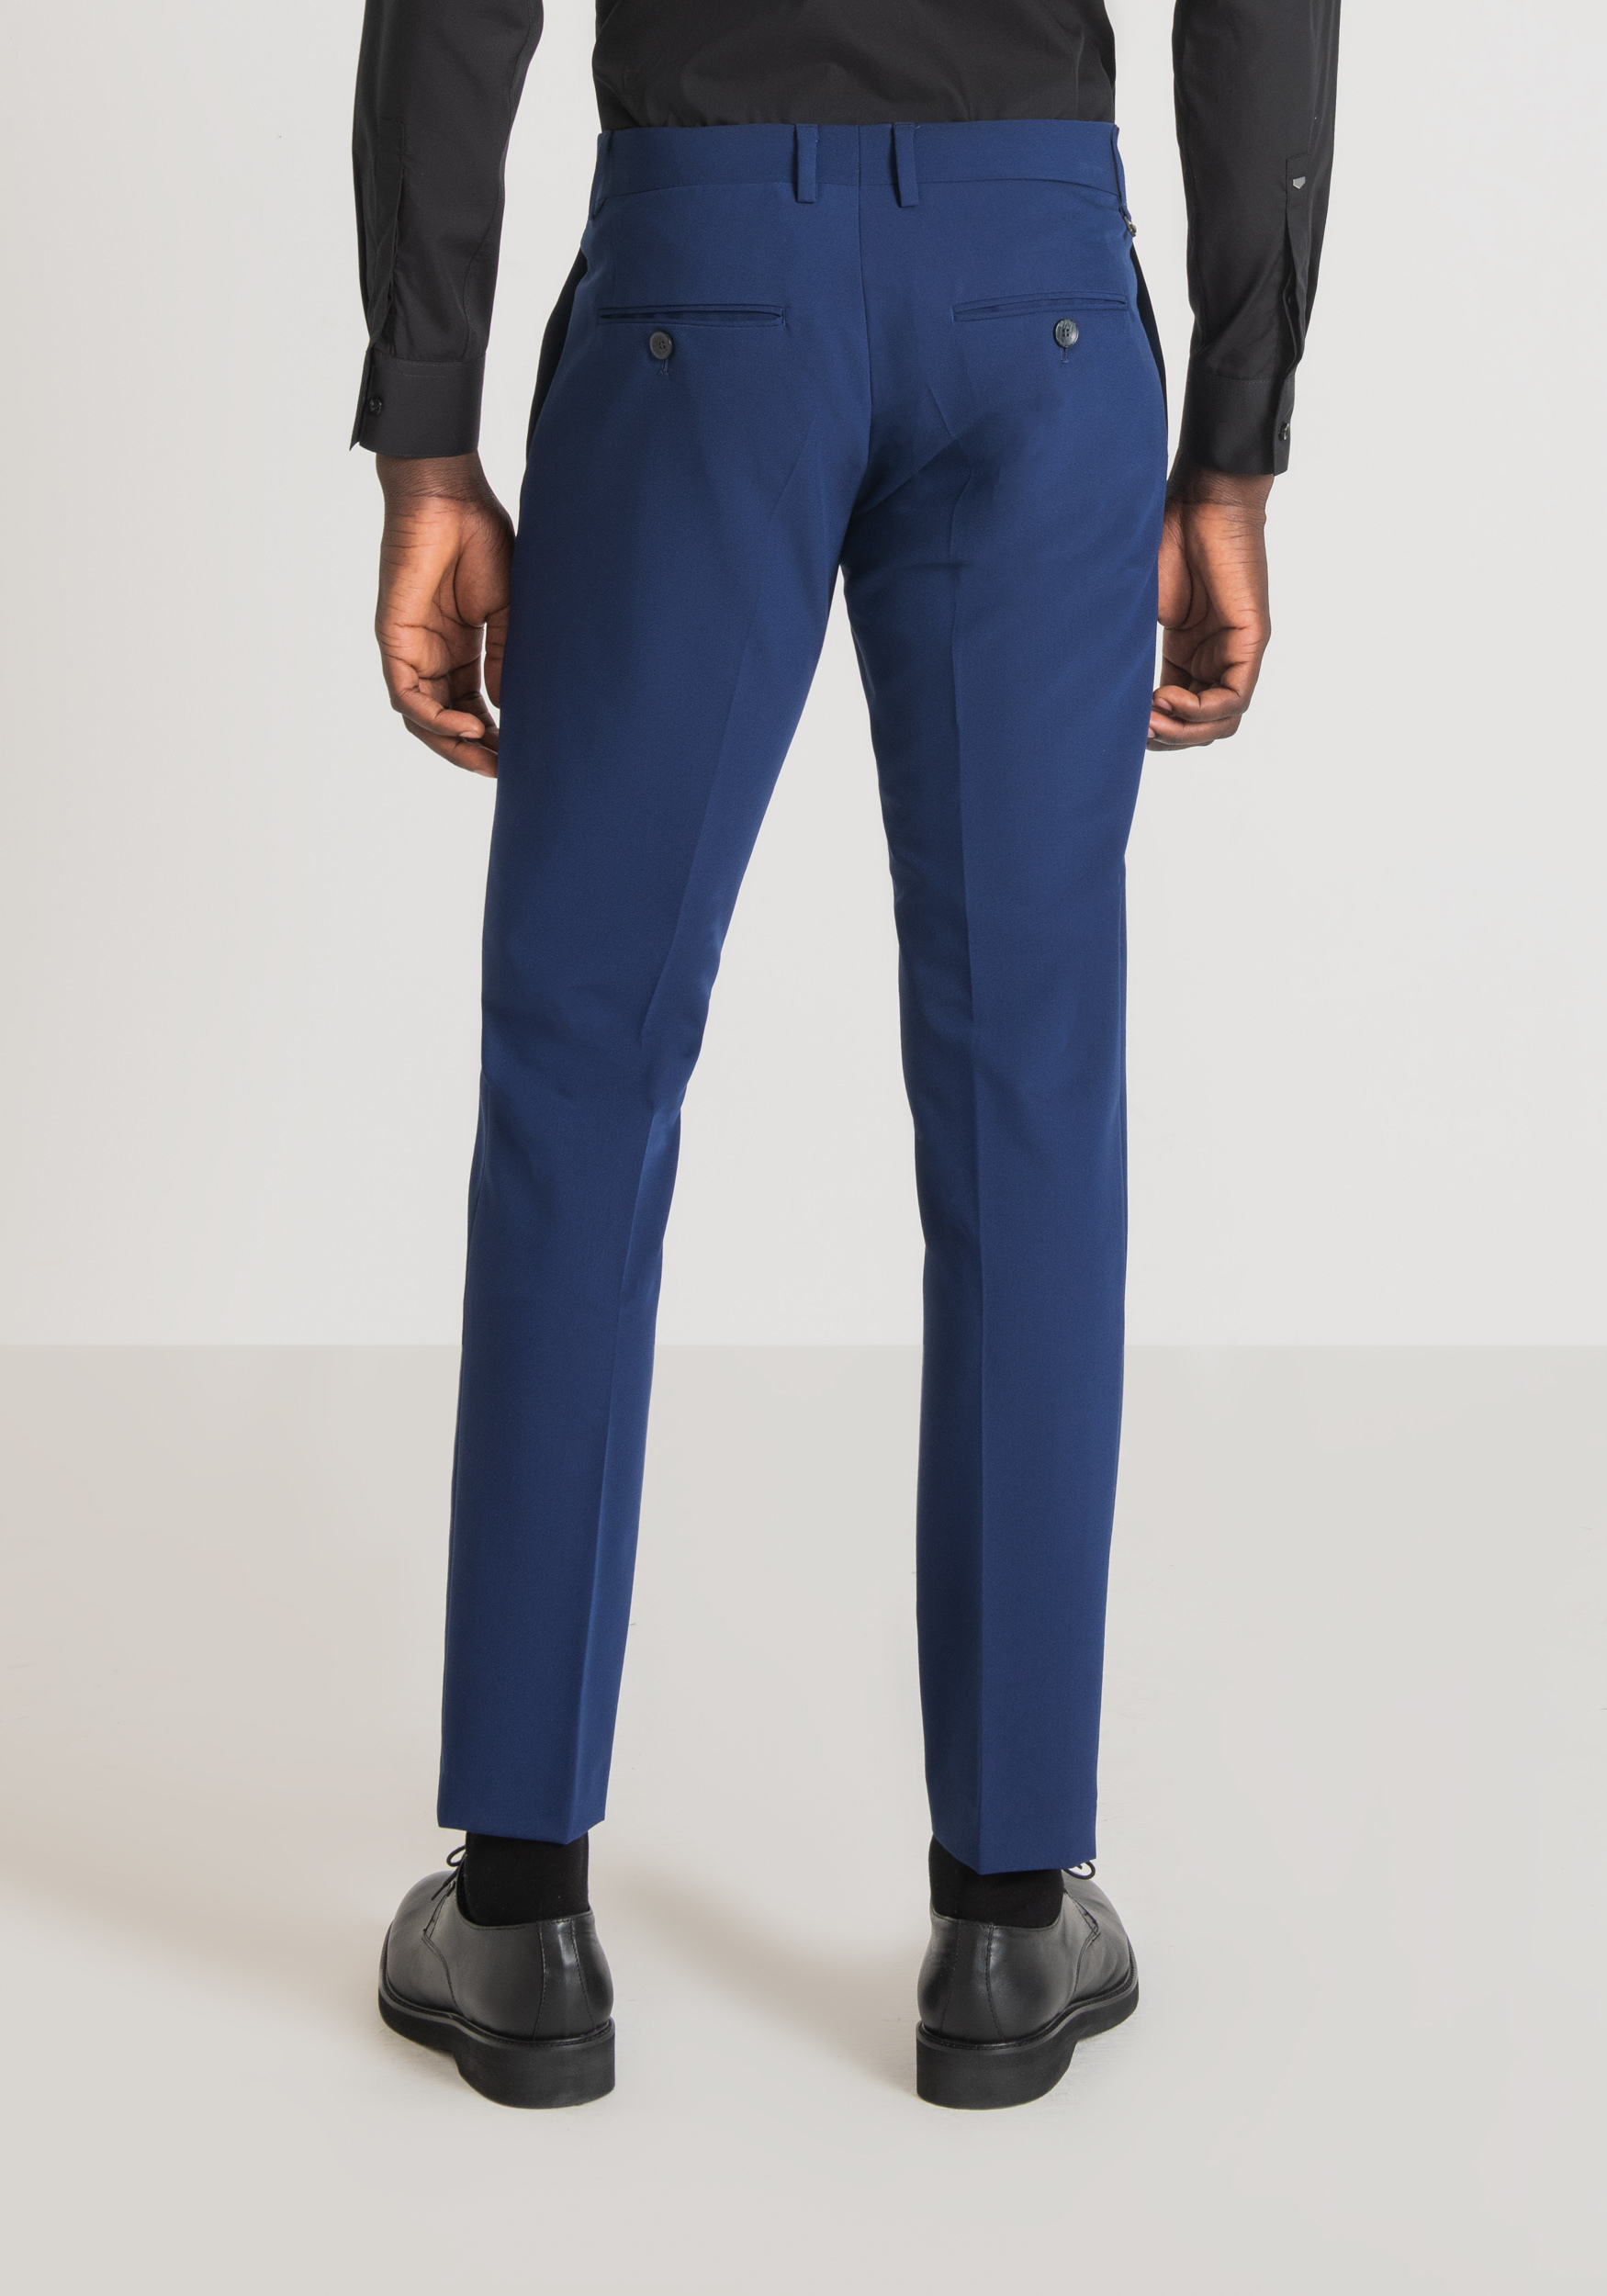 Antony Morato Pantalon Slim Fit Bonnie En Tissu De Viscose Melangee Elastique Avec Fermeture Dissimulee Bluette | Homme Pantalons